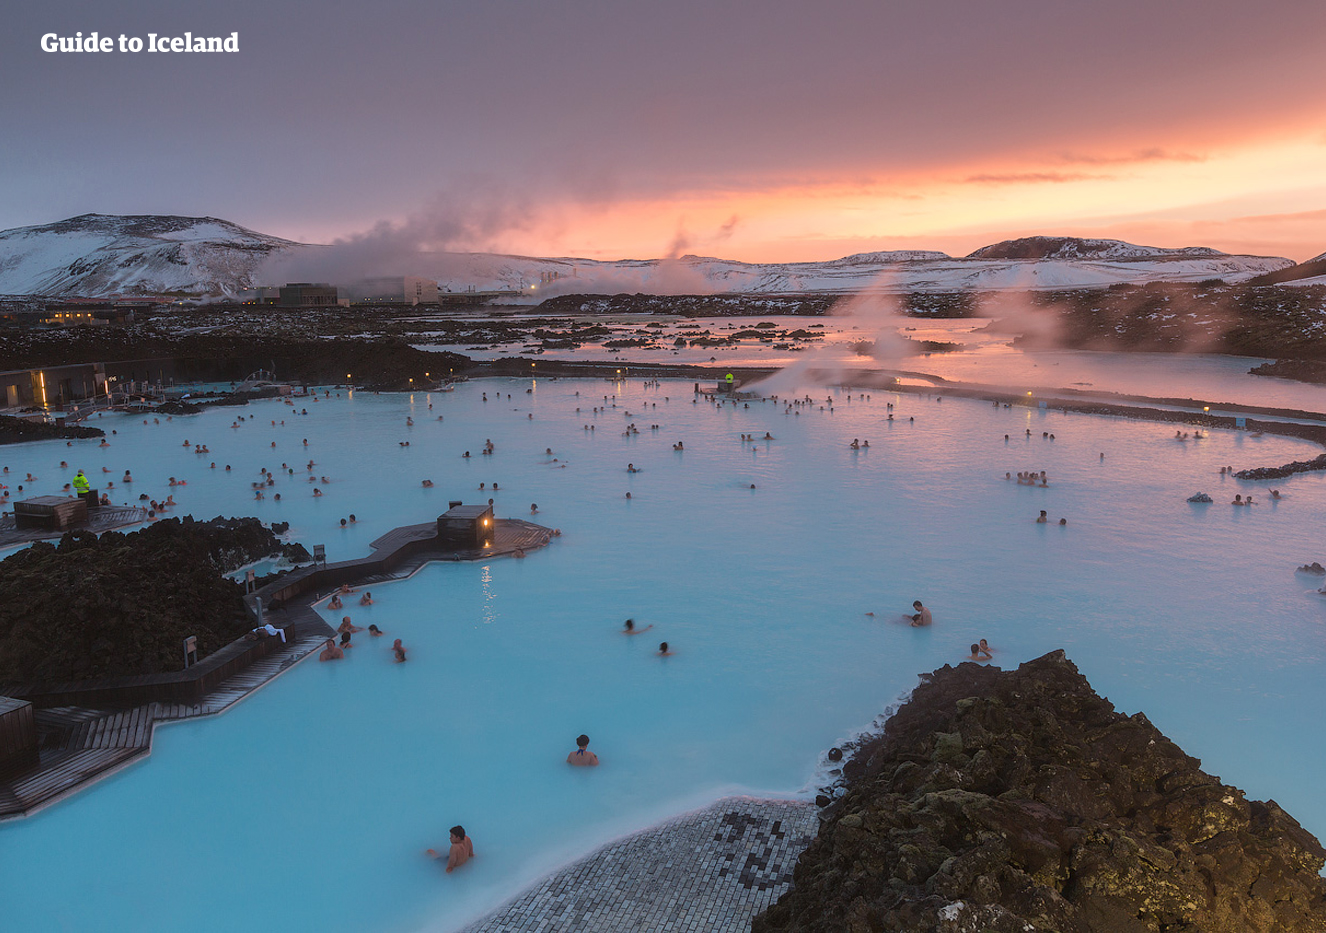 Las aguas azules y el musgo esmeralda revelan los contrastes de la Laguna Azul en la Península de Reykjanes.